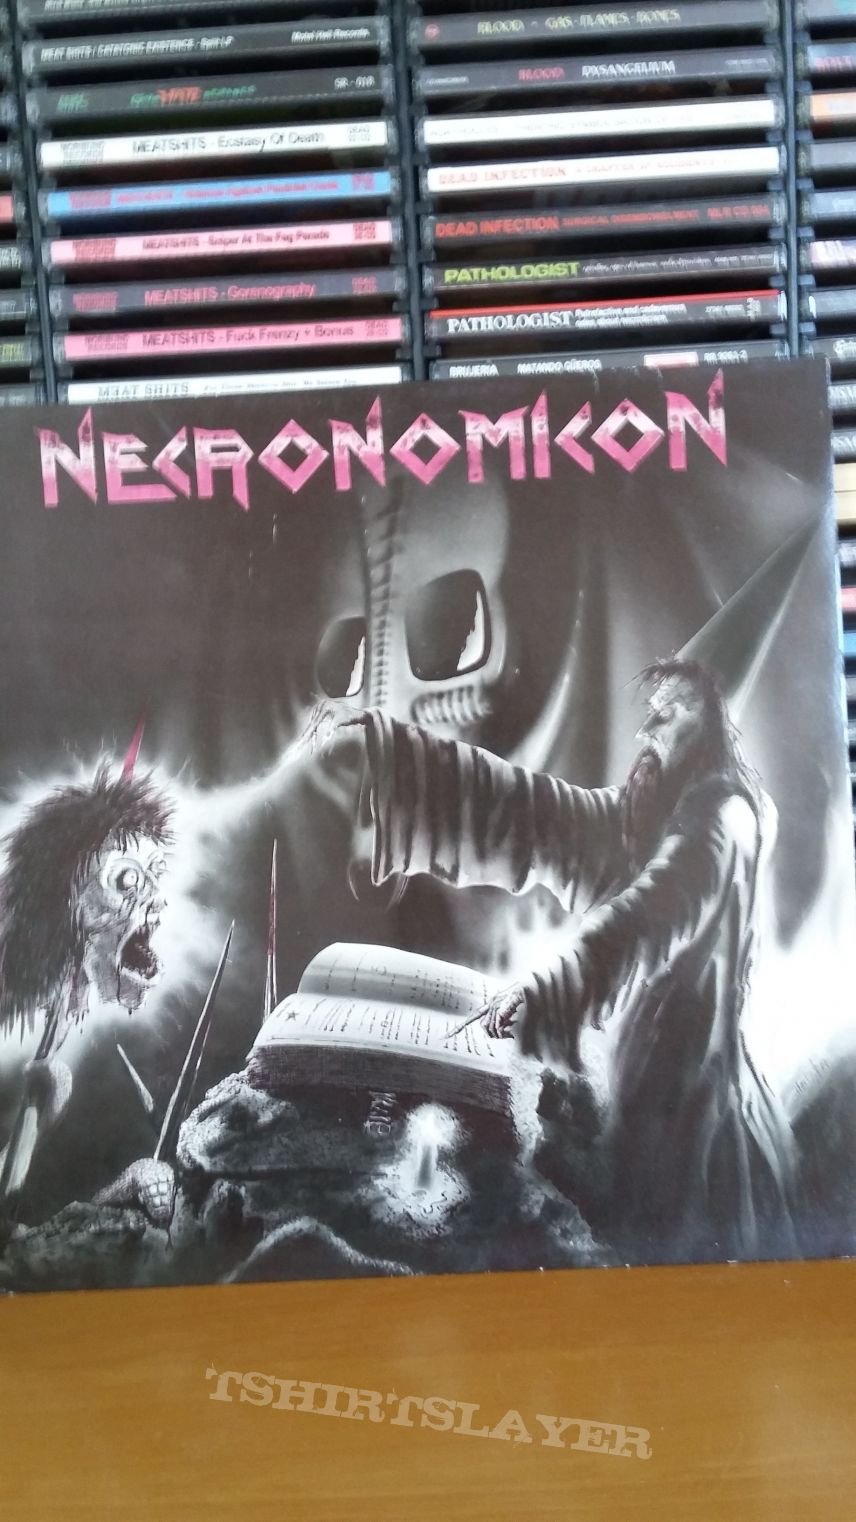 necronomicon - apocalyptic nightmare